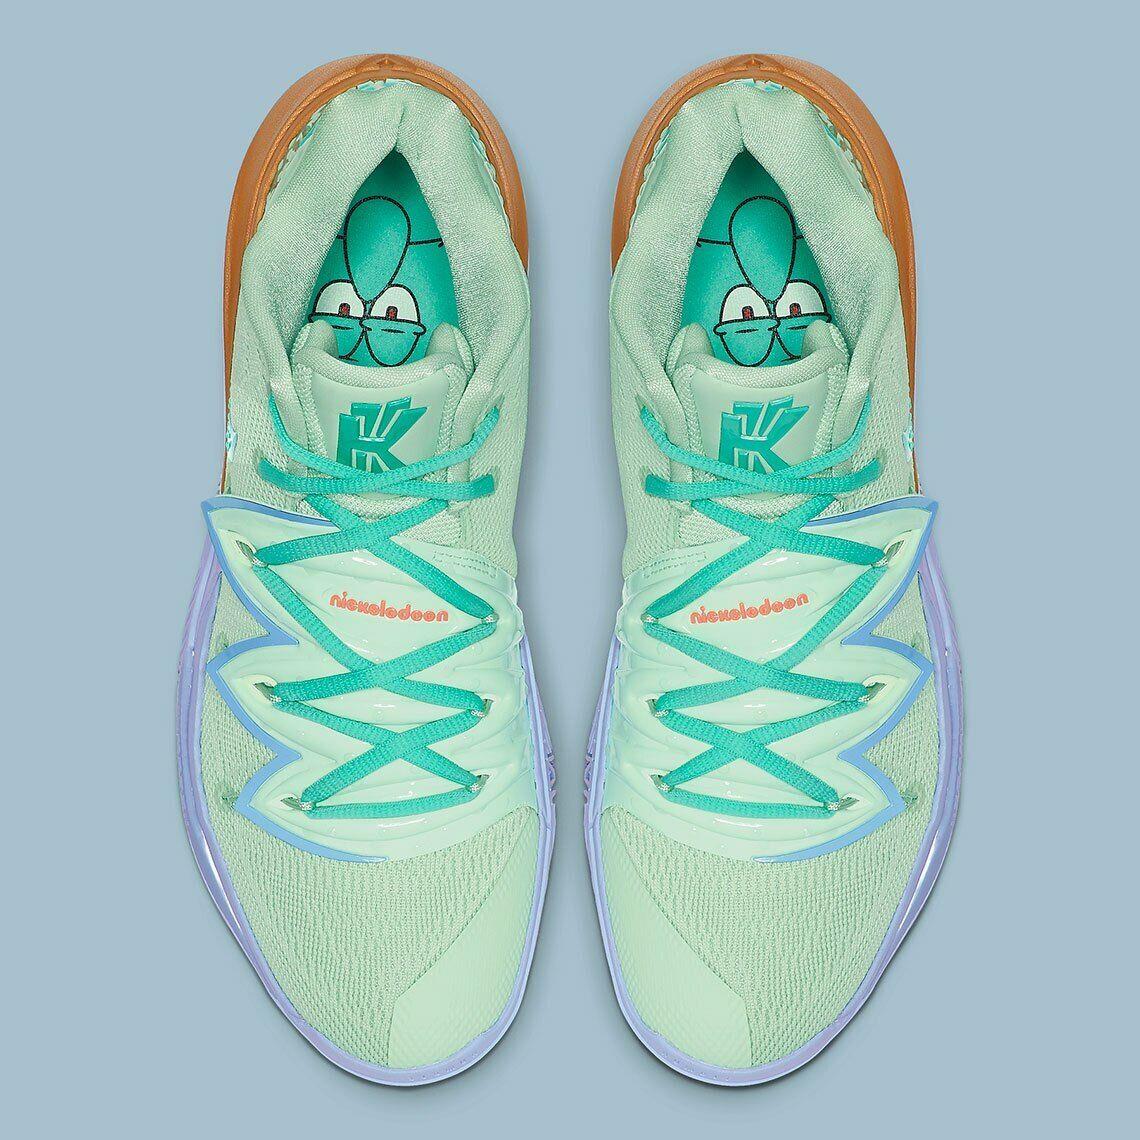 Nike Kyrie 5 IV SP SB Size 15. Spongebob Squidward. Spruce Green. CJ6951-300